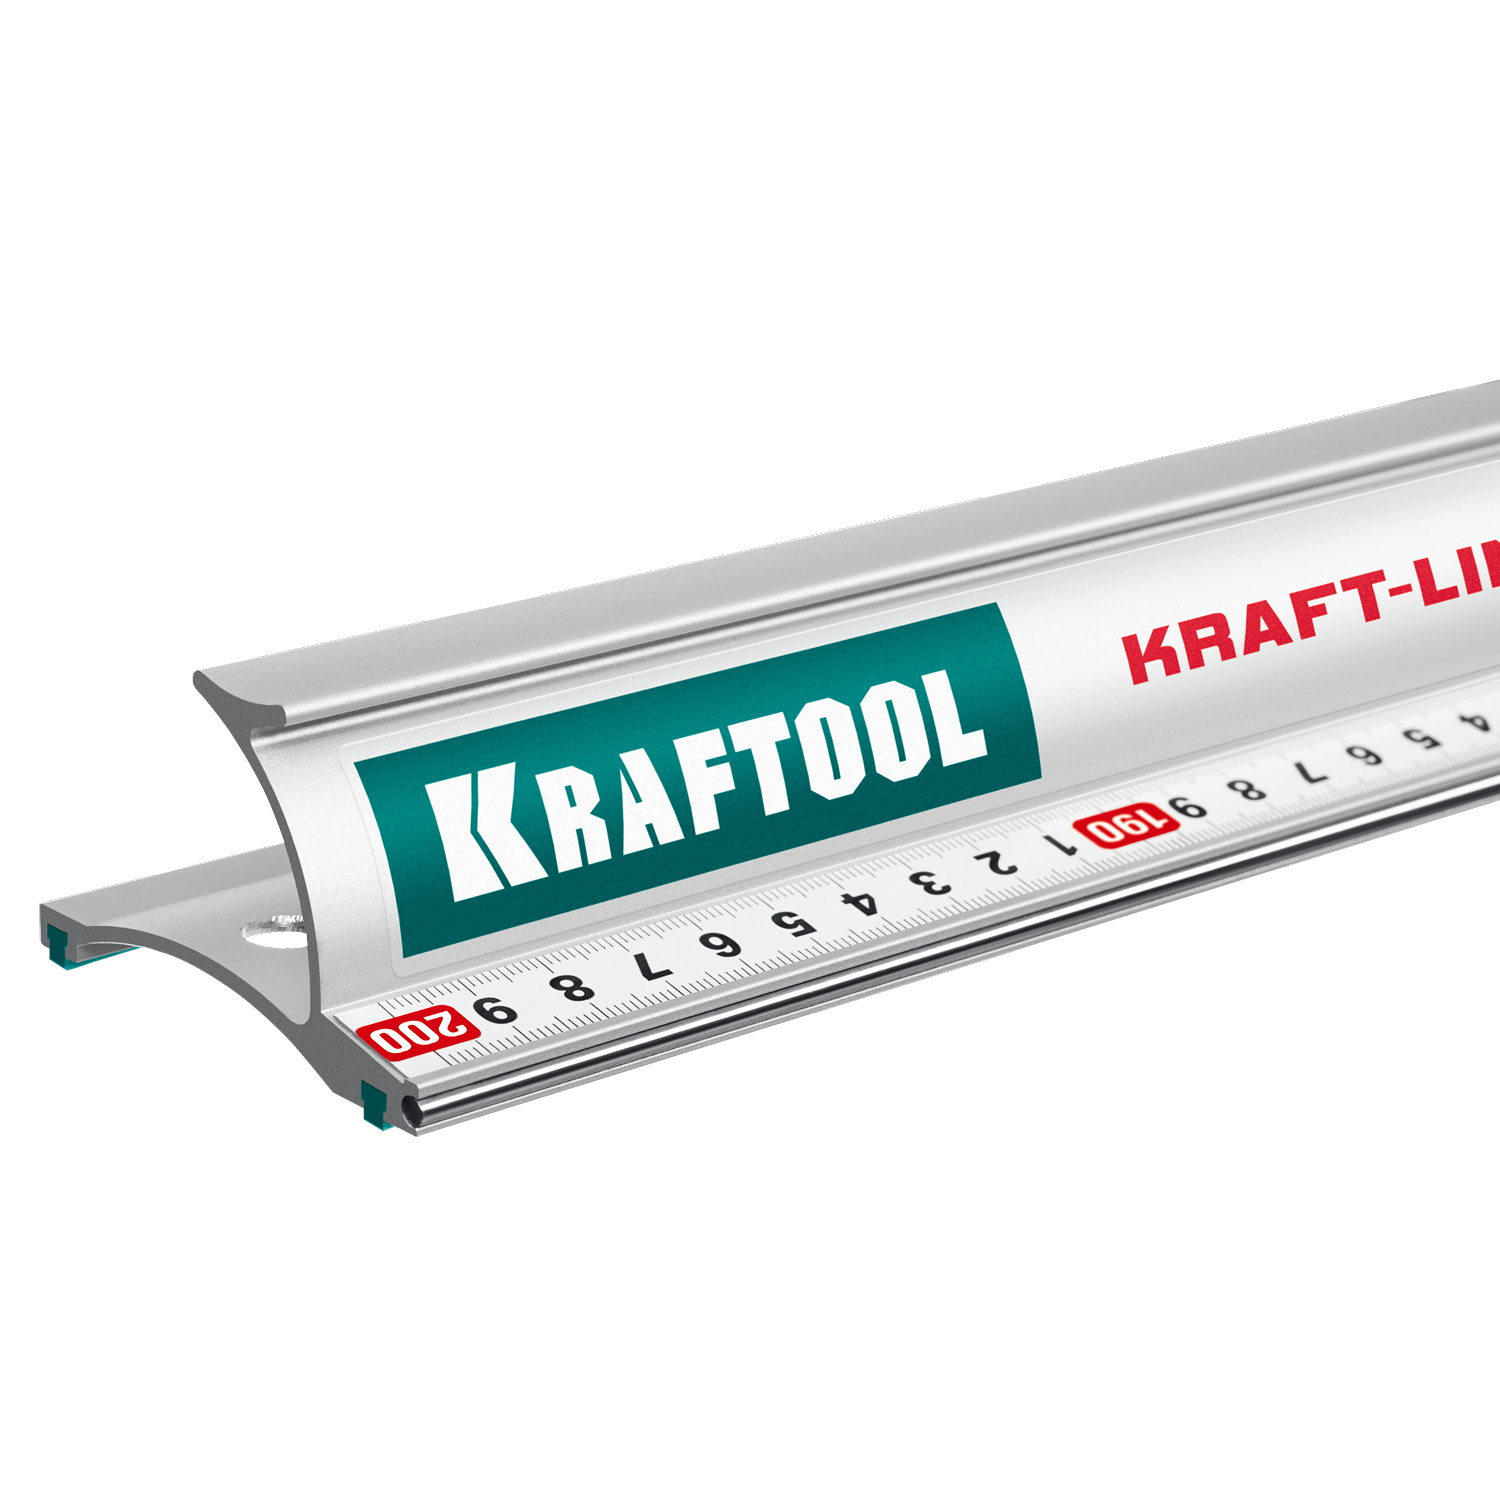 KRAFTOOL KRAFT-LINE, 2.0 м, усиленная алюминиевая линейка со стальной направляющей (34275-200)